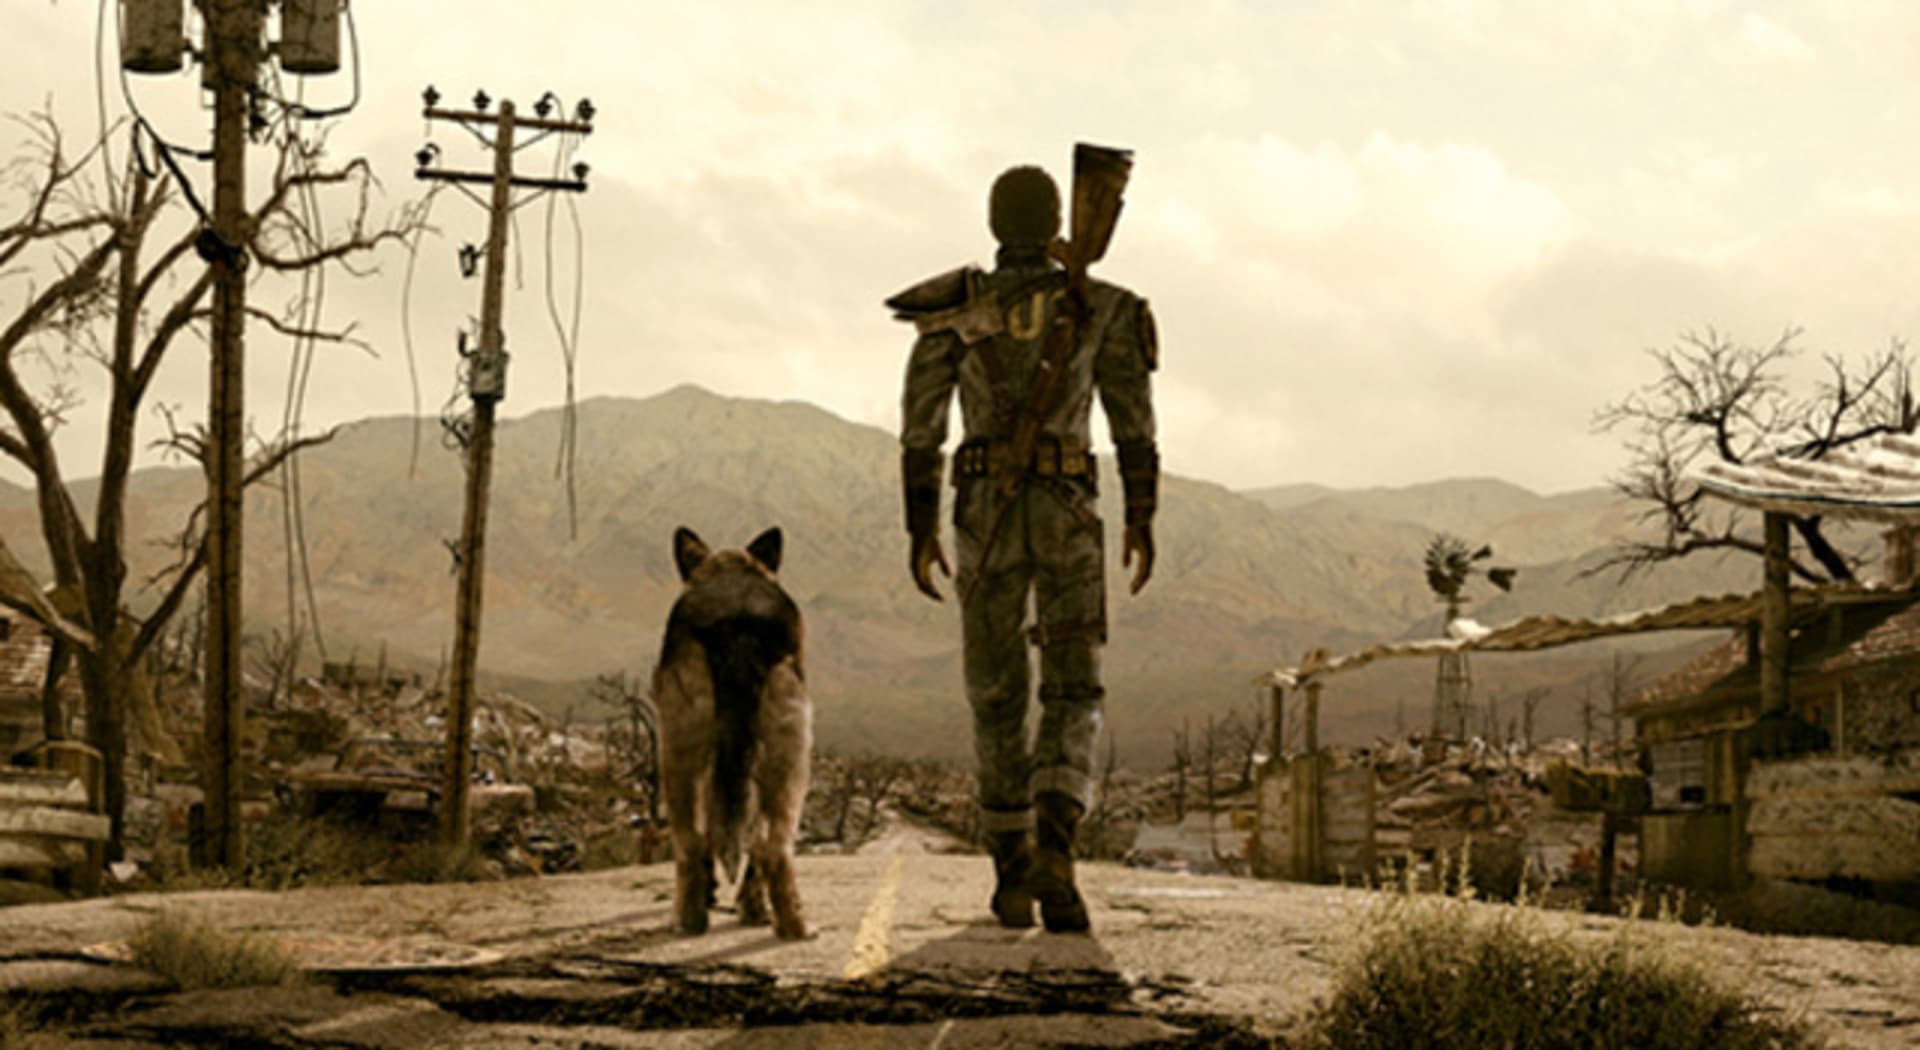 I v novém Falloutu se můžeme opět těšit jak na jeho skvělou atmosféru...